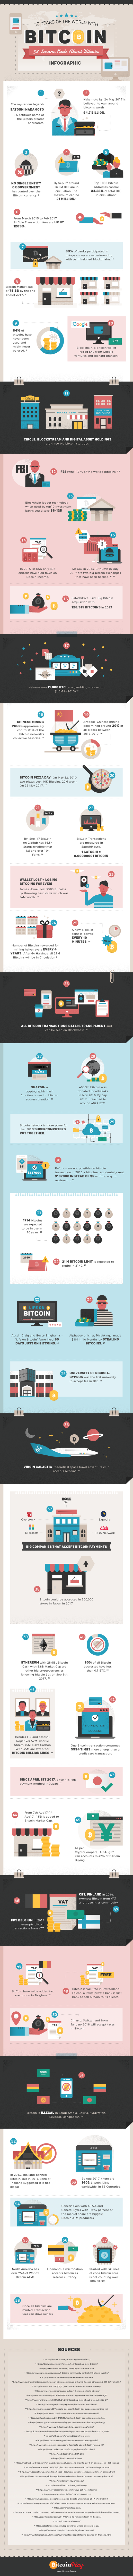 bitcoin fact update